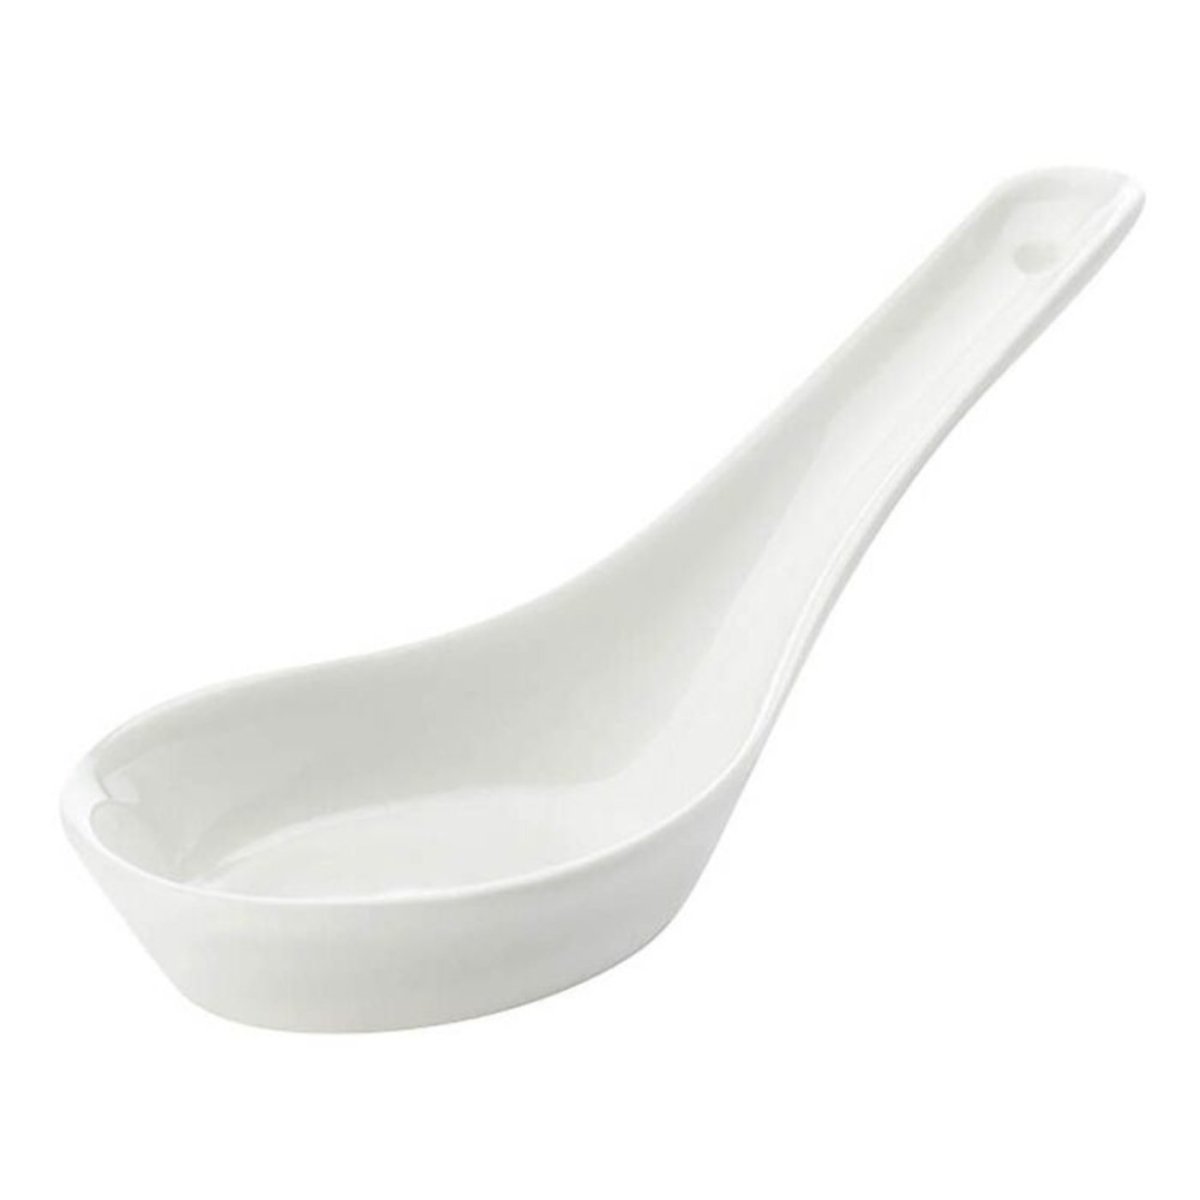 White Basics Spoon - Minimax